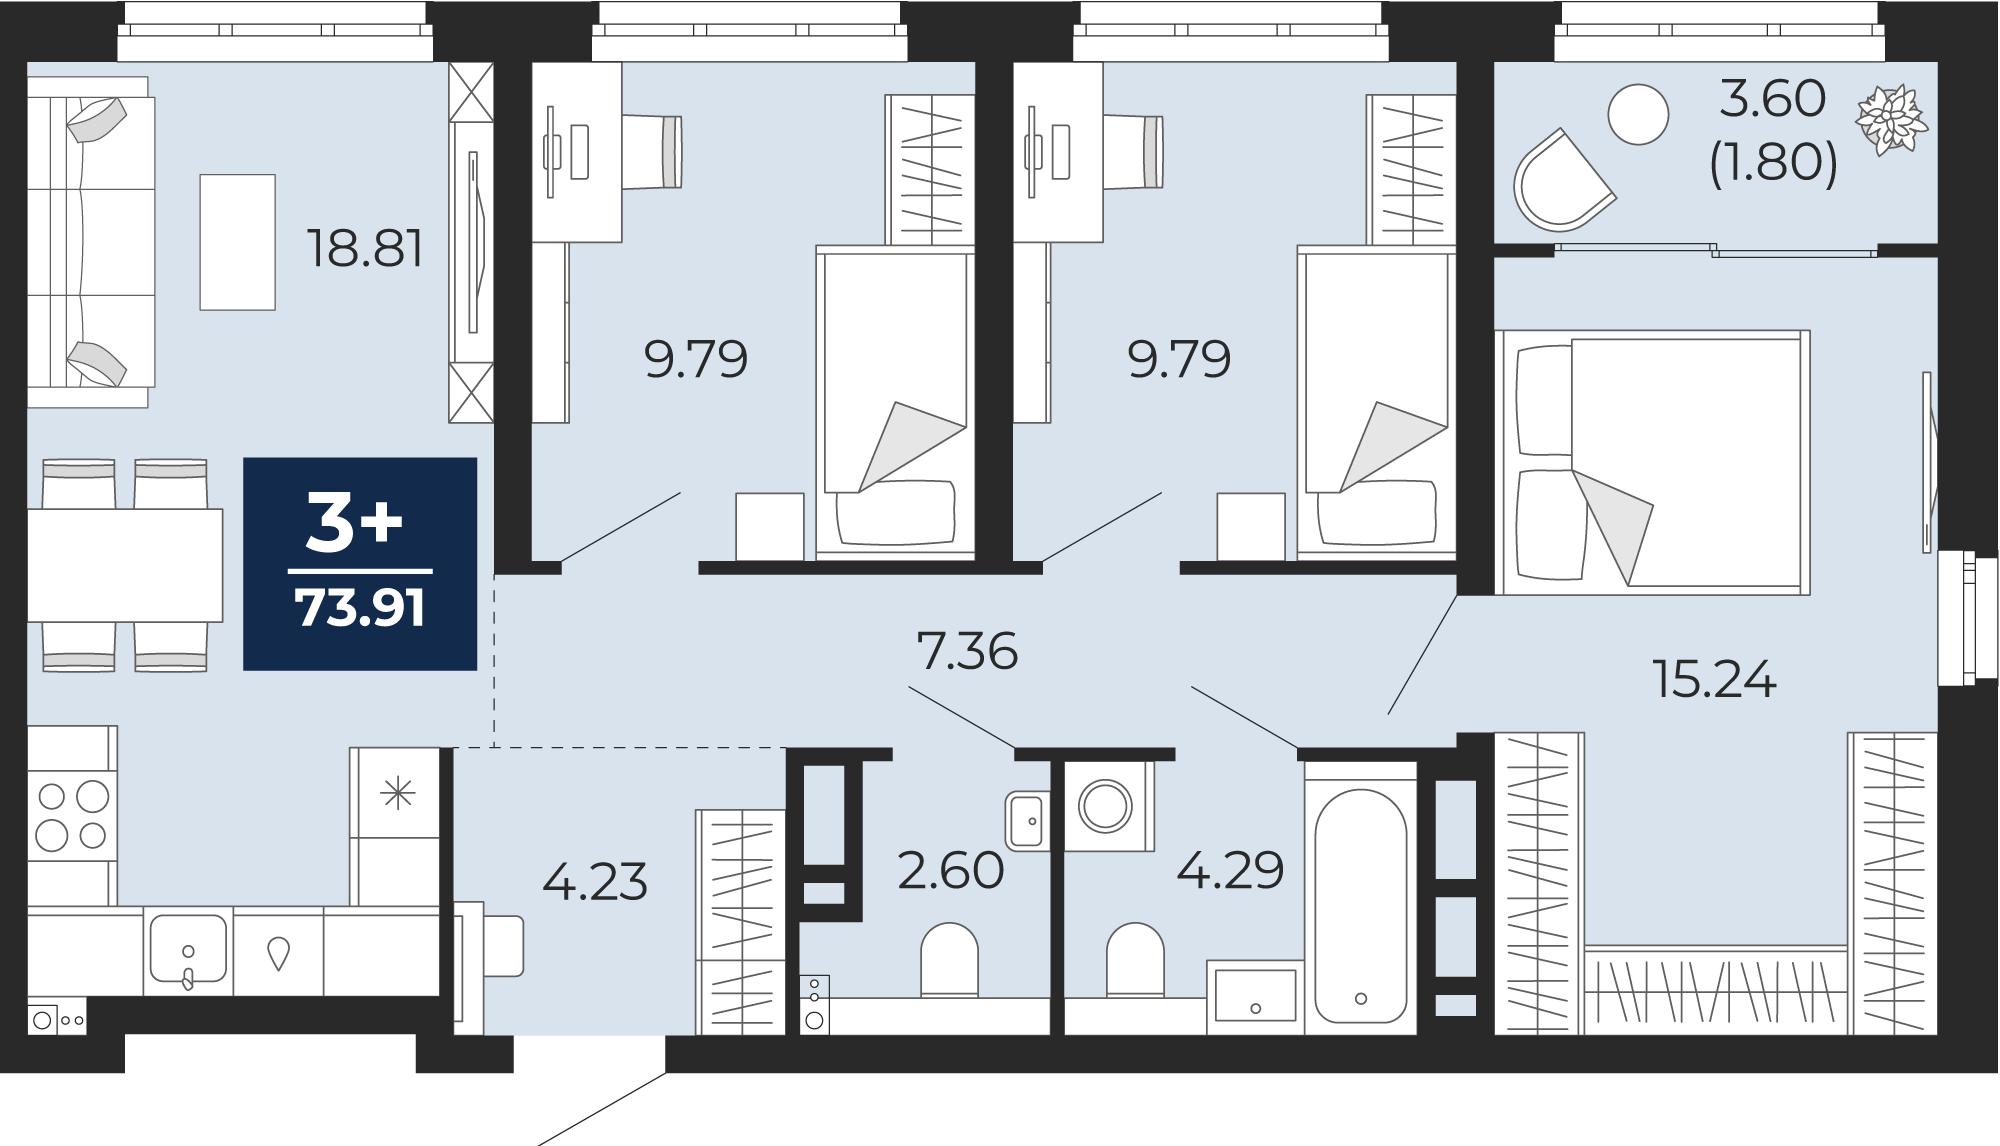 Квартира № 16, 3-комнатная, 73.91 кв. м, 5 этаж